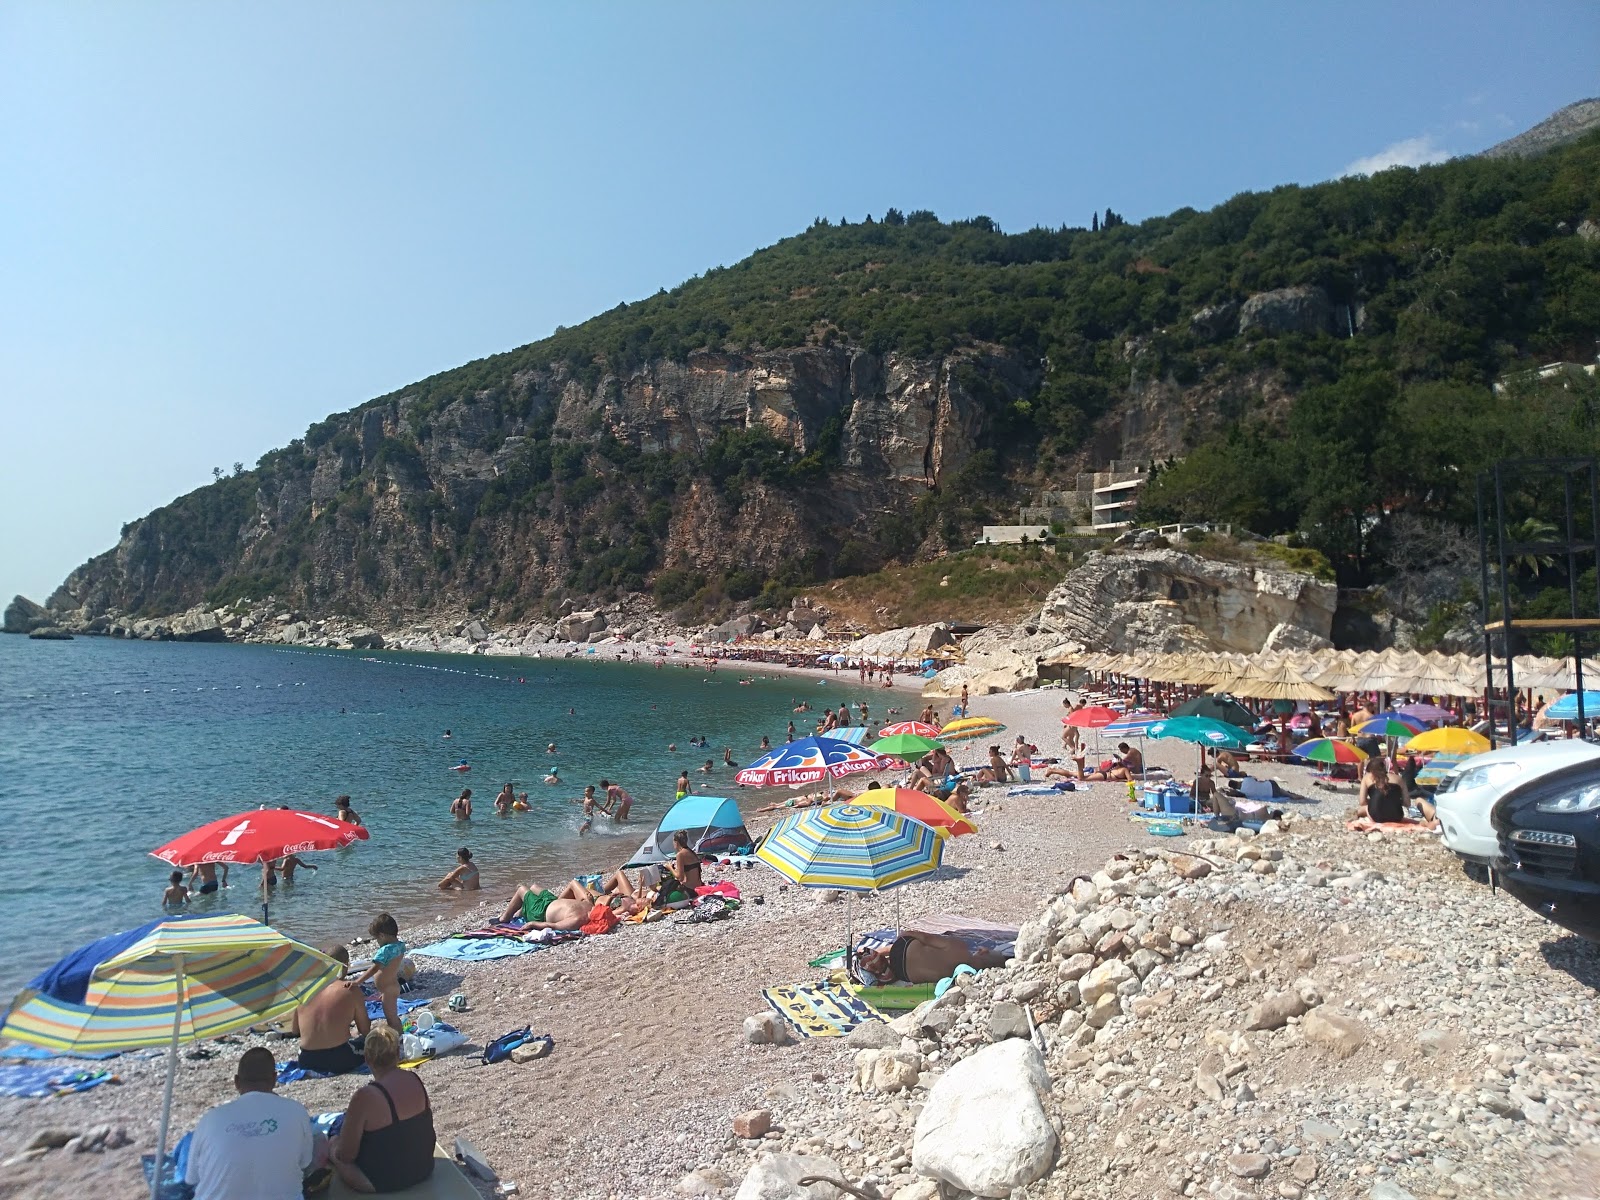 Fotografie cu Perazica Do beach - locul popular printre cunoscătorii de relaxare